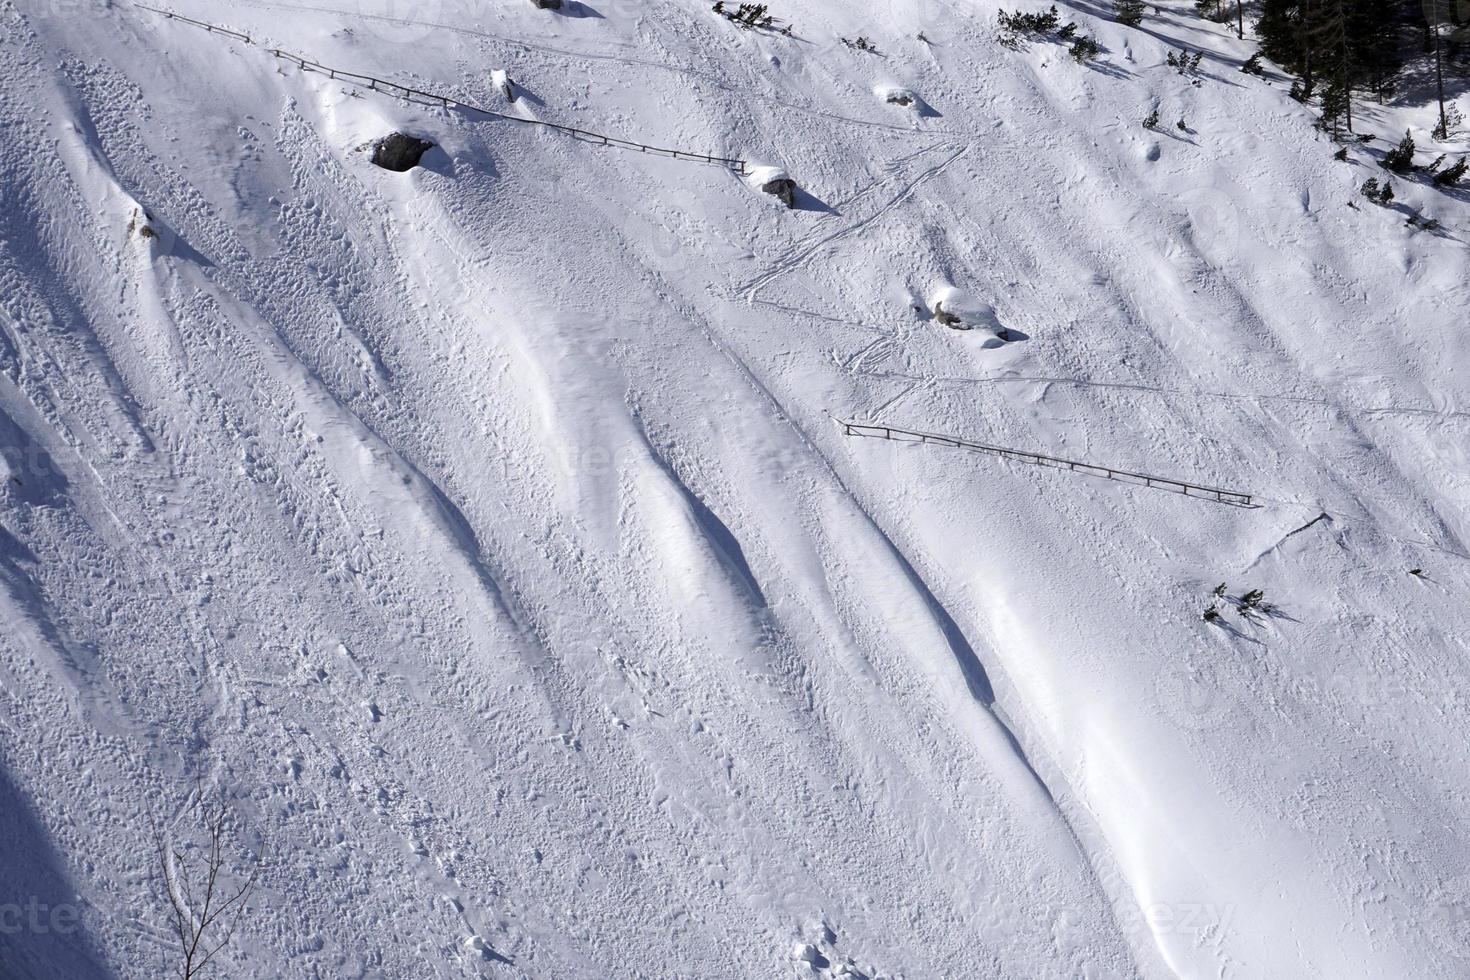 tobogán de nieve de avalancha en las montañas dolomitas foto